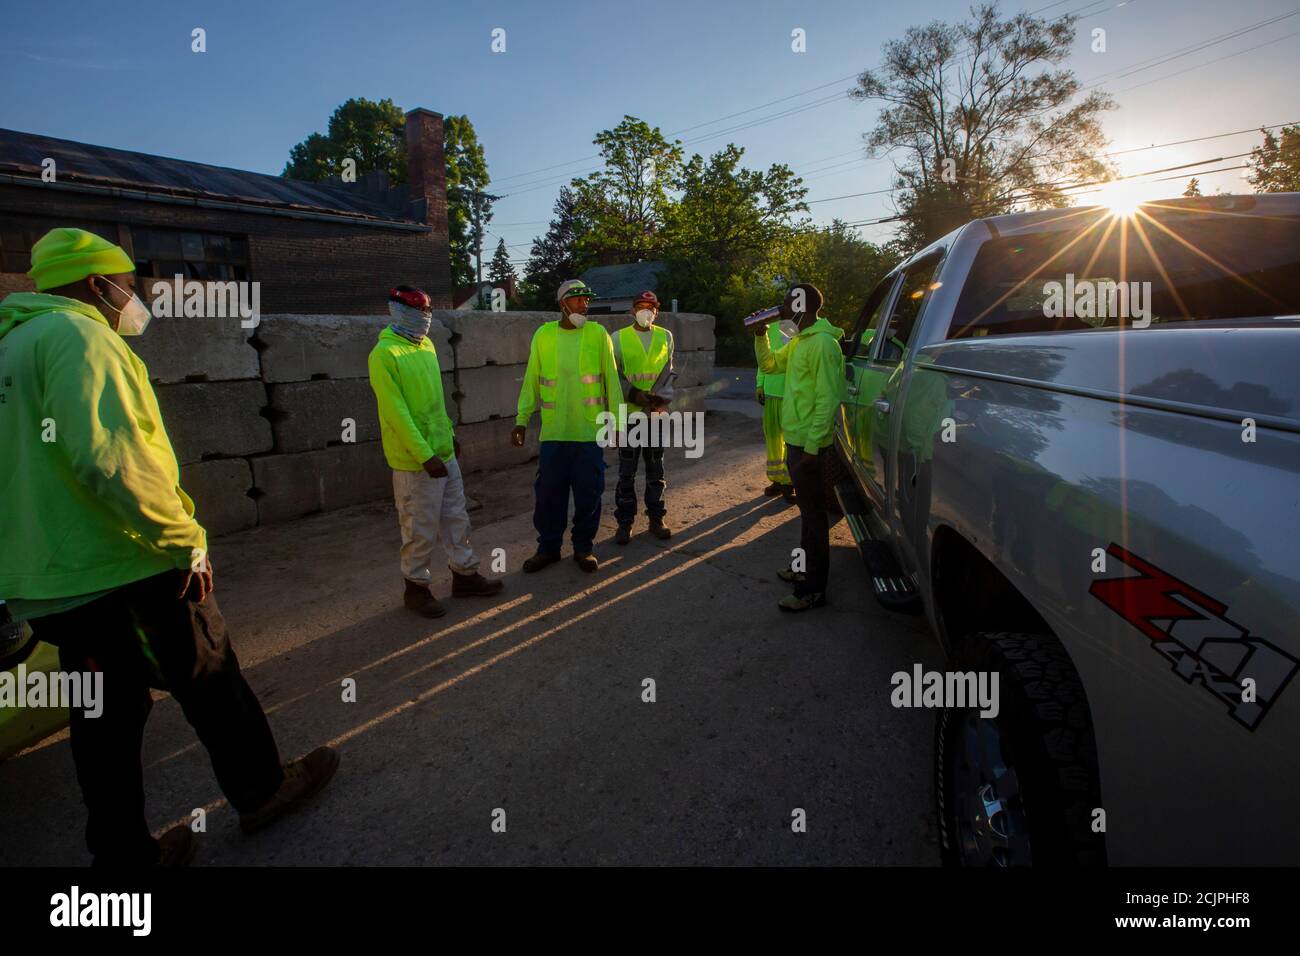 Detroit, Michigan - Arbeiter der Detroit Grounds Crew treffen sich im Morgengrauen, bevor sie auf dem Gelände geschlossener öffentlicher Schulen das Gras schneiden. Stockfoto